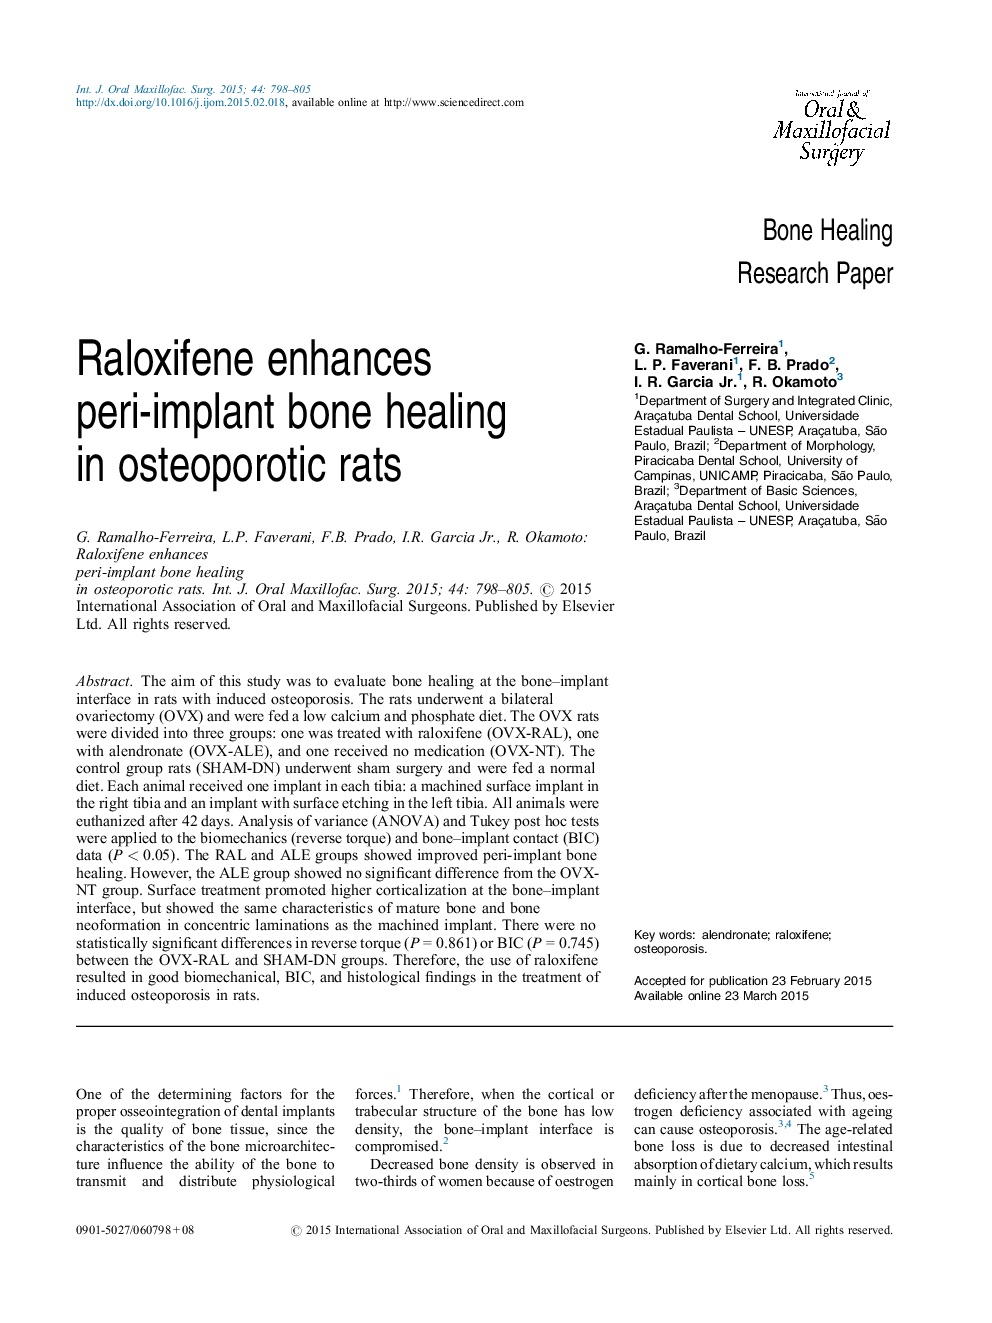 رالوکسیفن باعث بهبودی استخوان های پری ایمپلنت در موش های استئوپروز می شود 